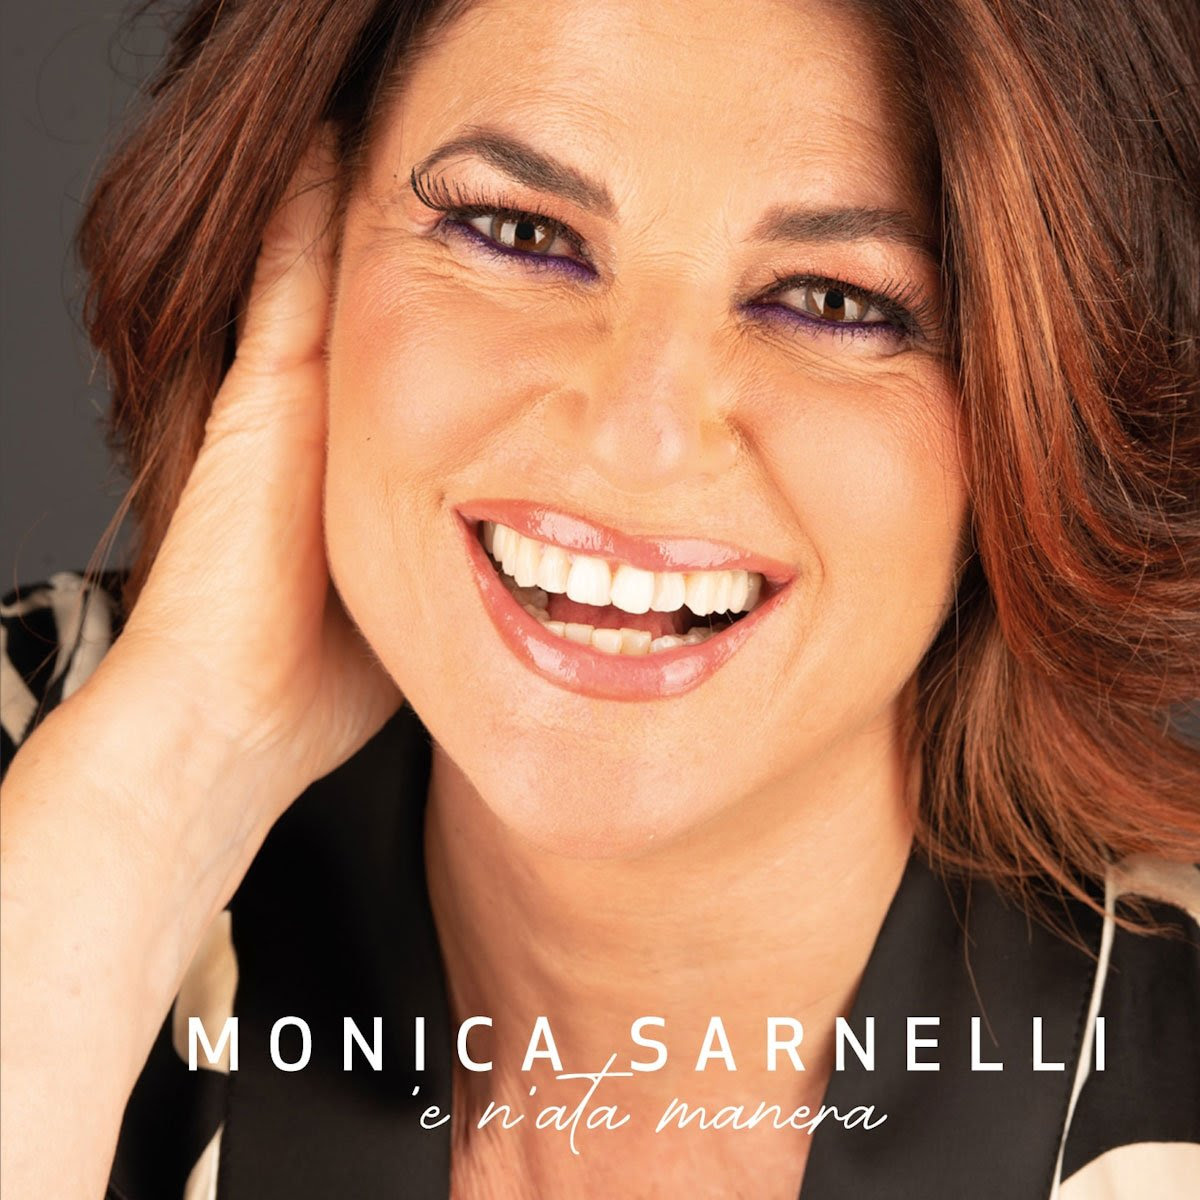 da venerdì 29 marzo sarà in rotazione radiofonica “T’amo e t’amerò”, il nuovo singolo di Monica Sarnelli estratto dal nuovo album